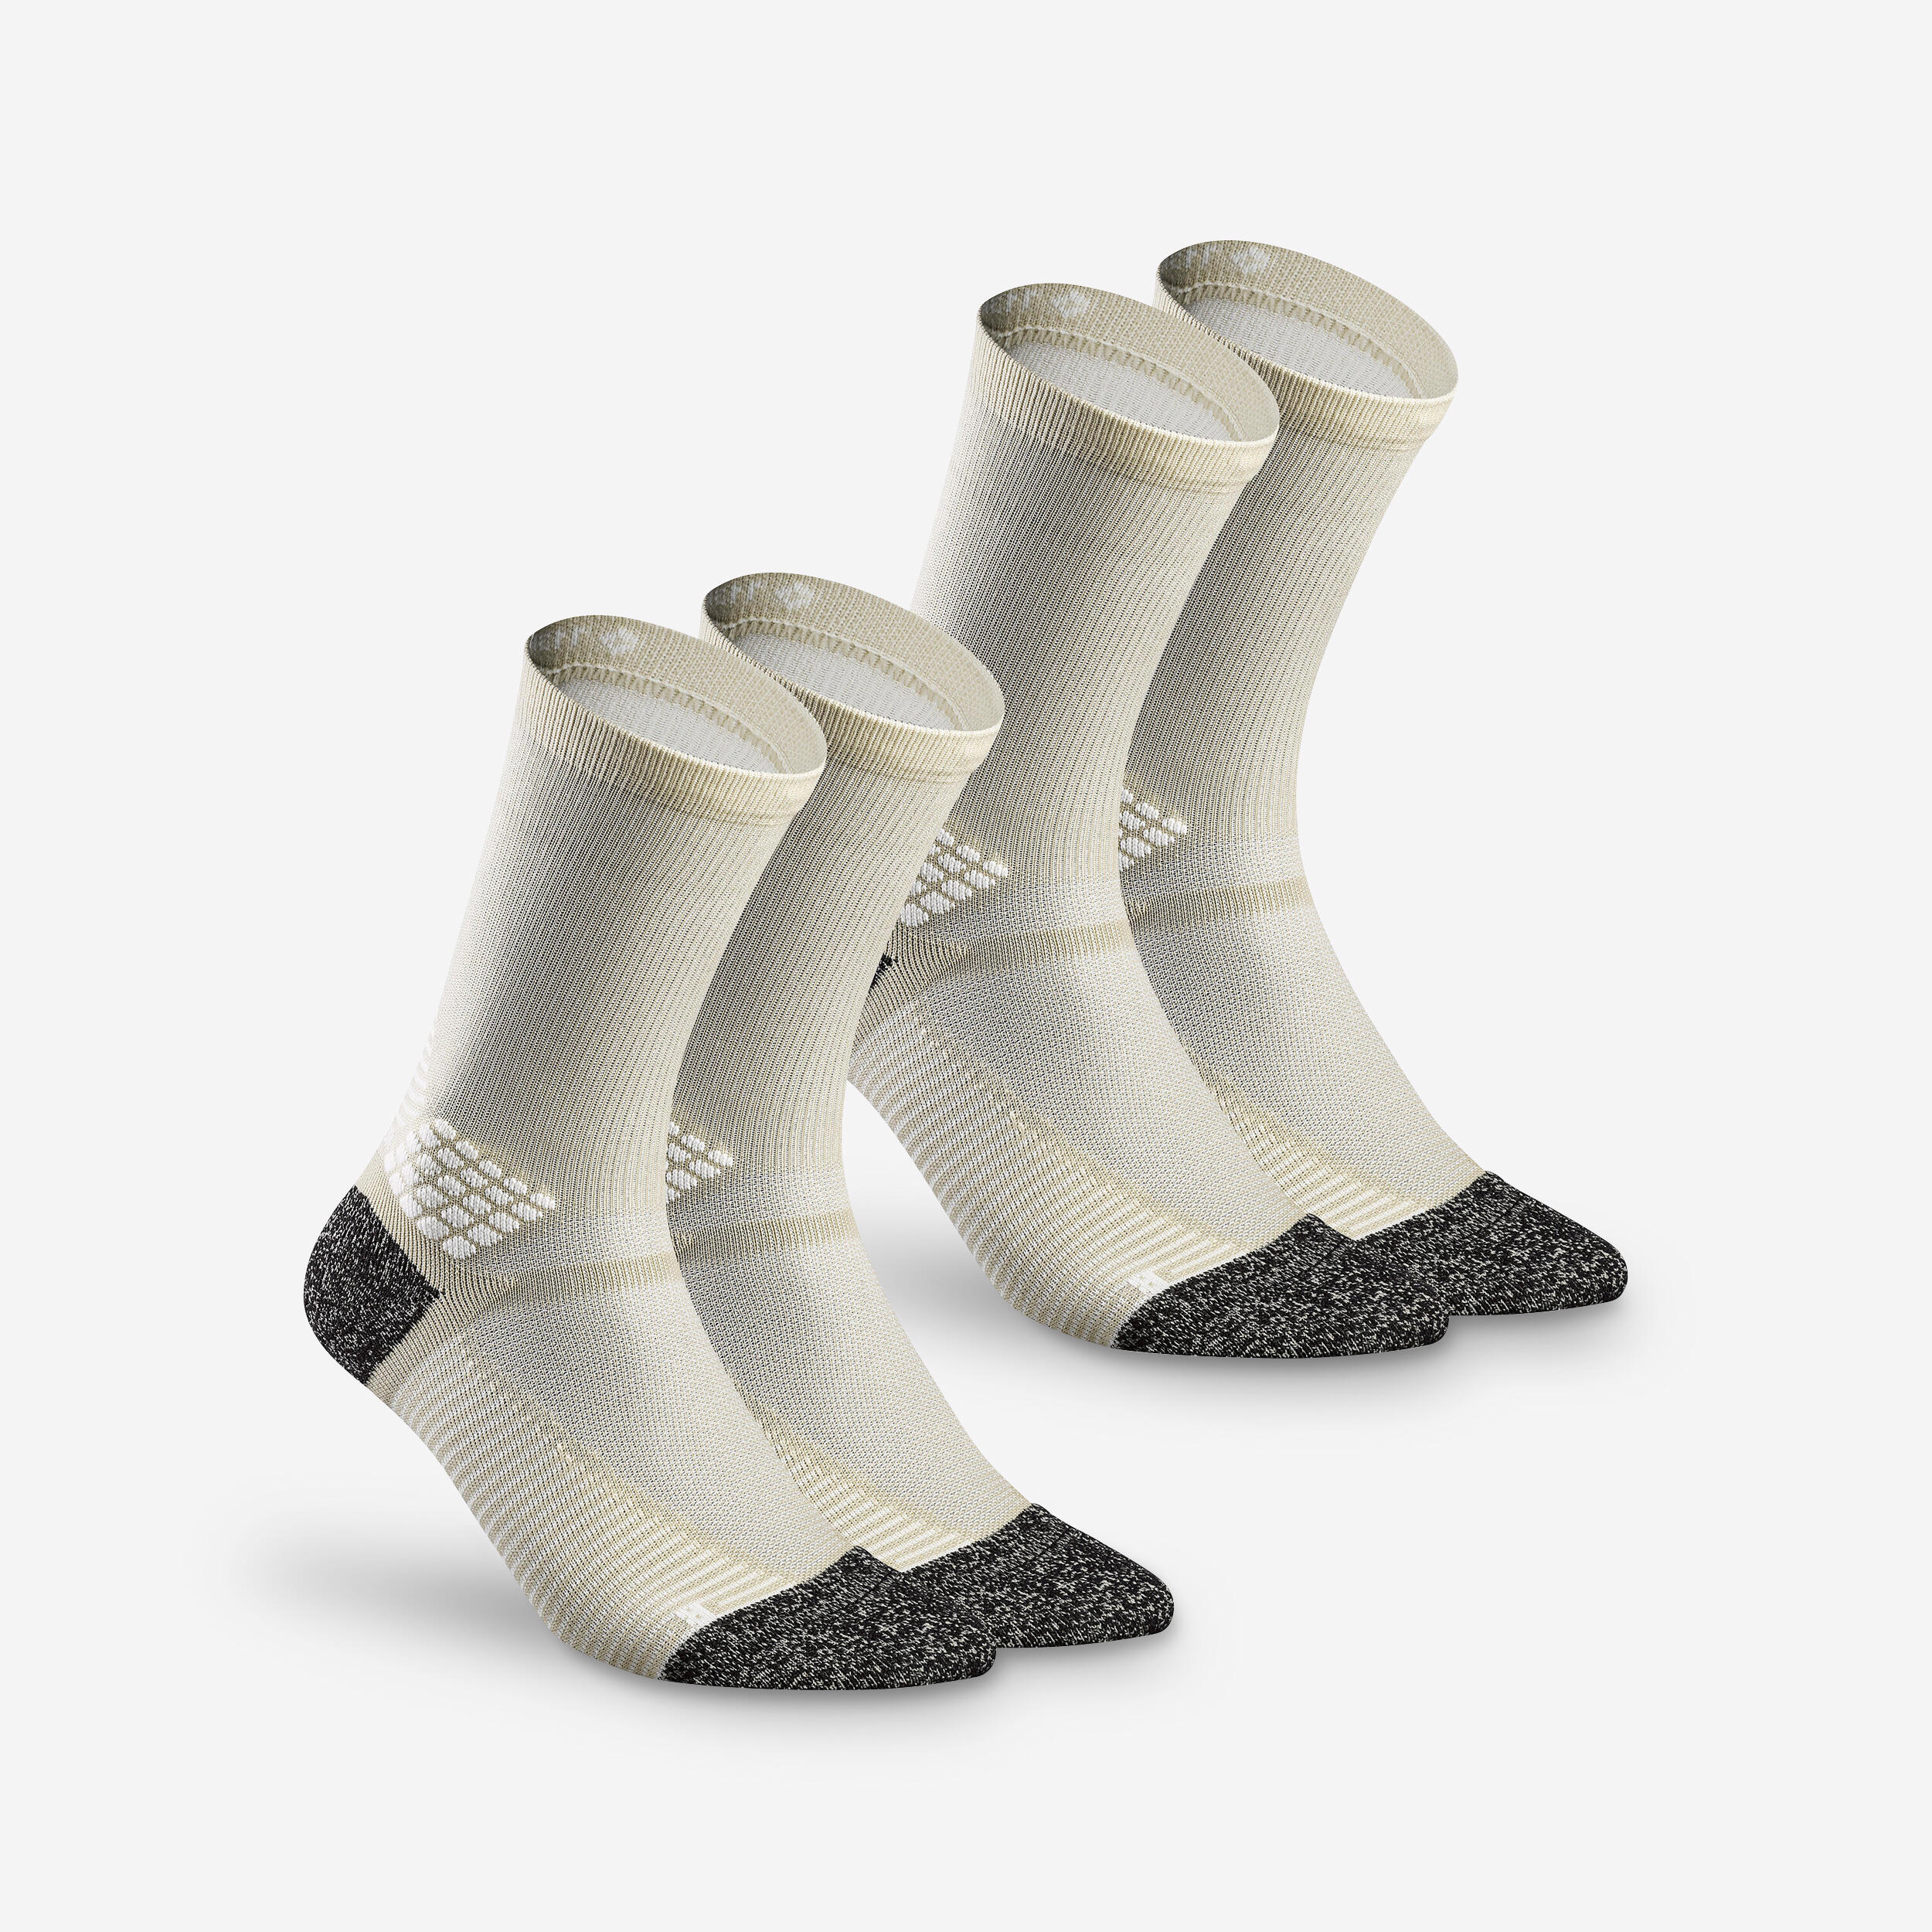 Hiking socks - Hike 500 High Beige x2 pairs  1/5